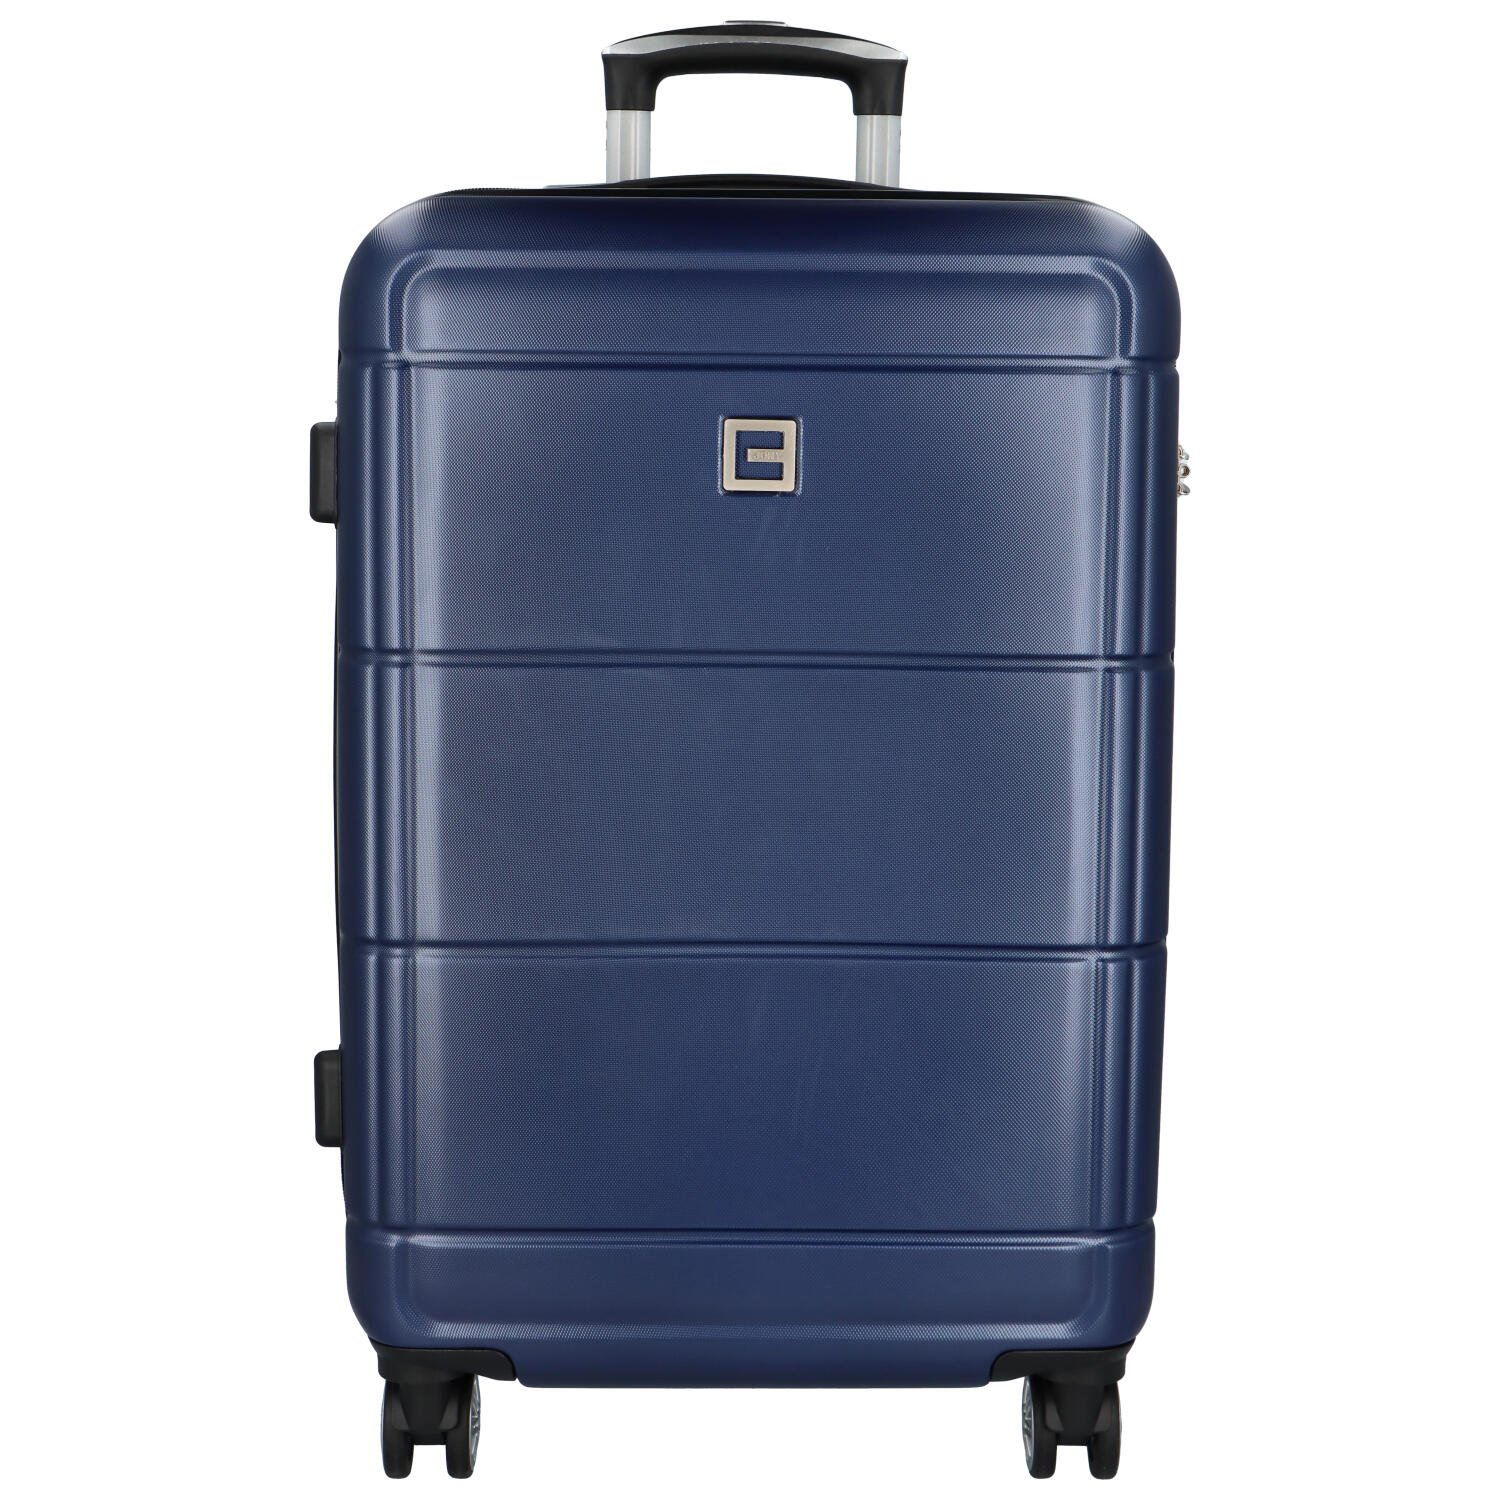 Cestovní plastový kufr Gothard velikost L, tmavě modrý